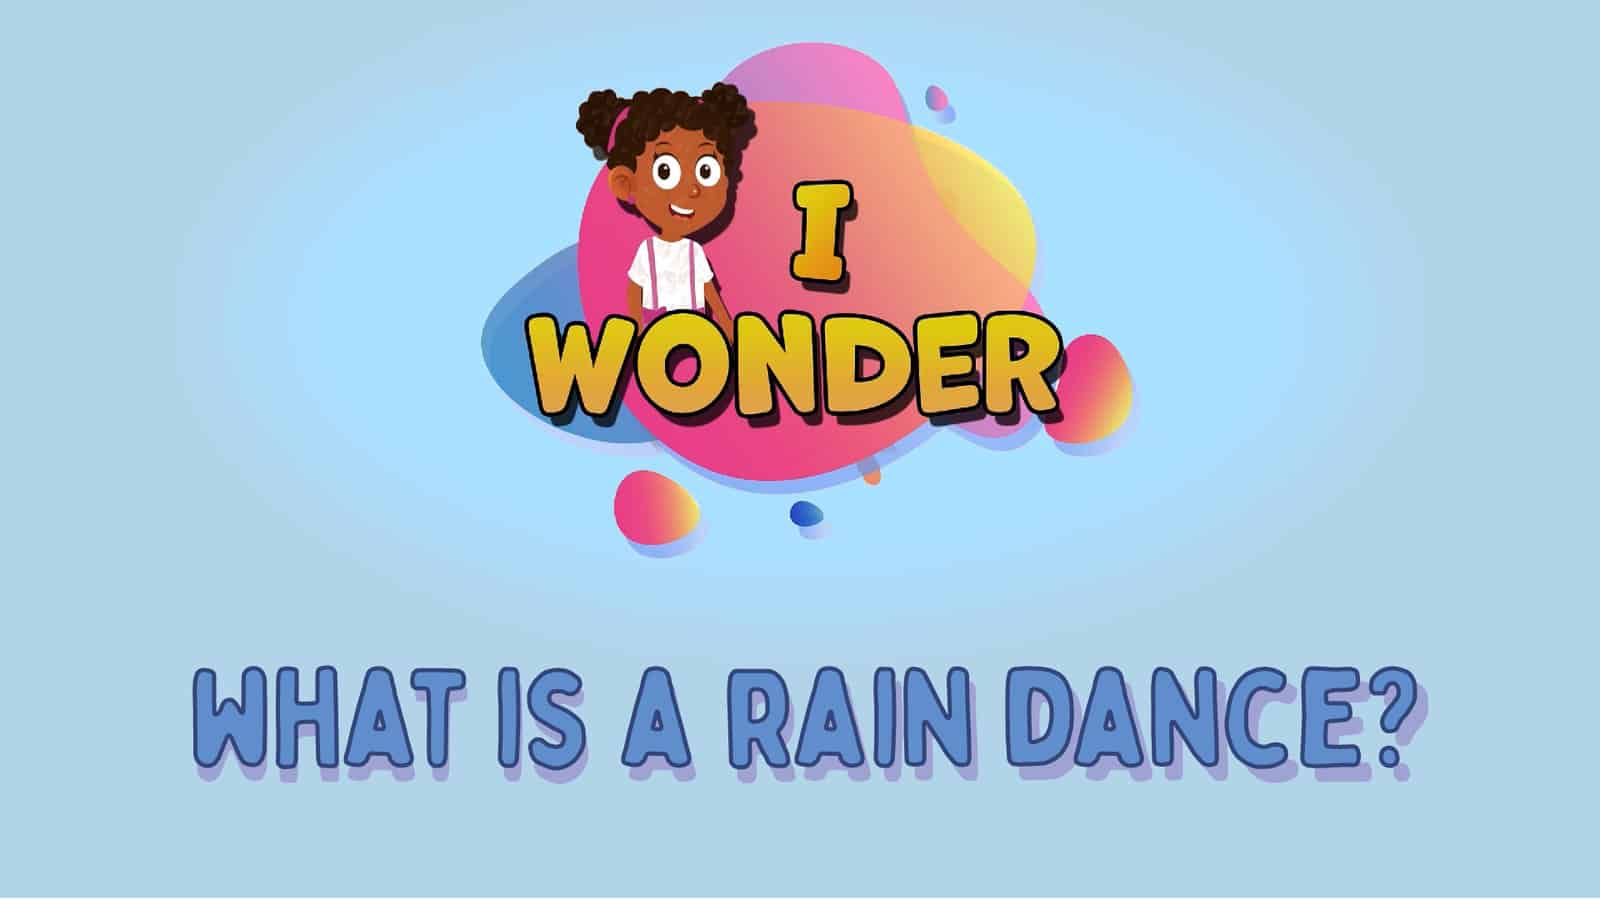 What Is A Rain Dance?